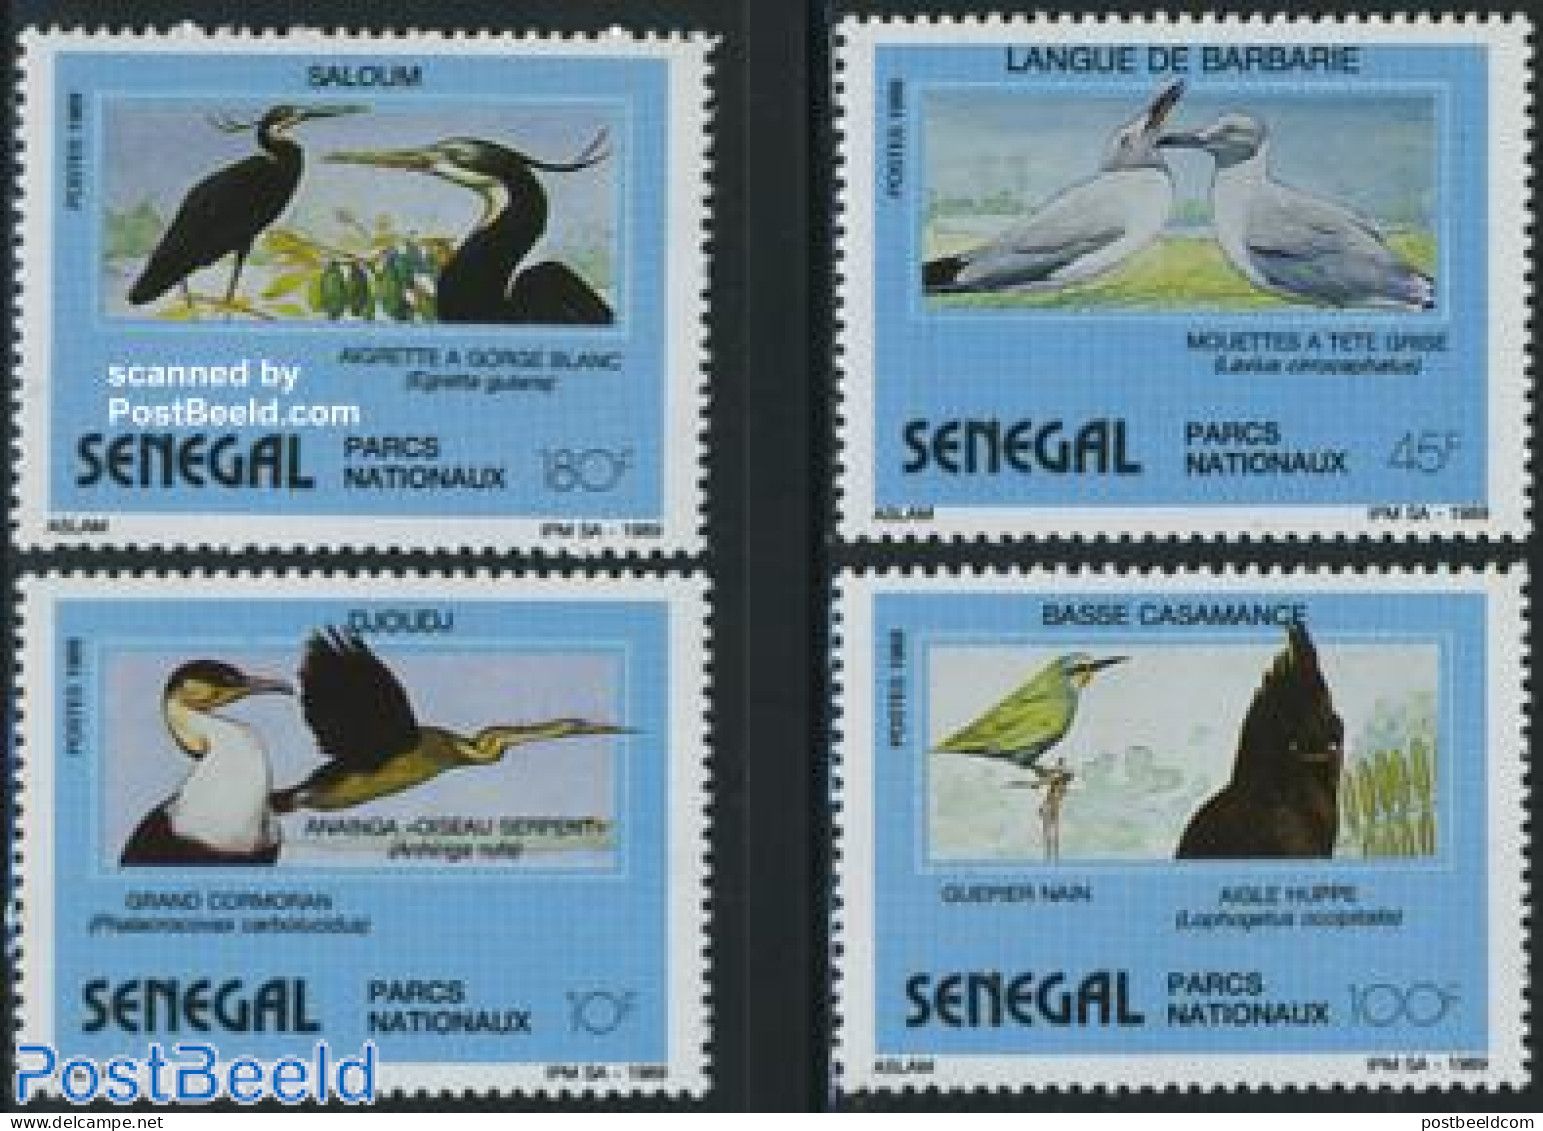 Senegal 1989 Birds 4v, Mint NH, Nature - Birds - National Parks - Nature